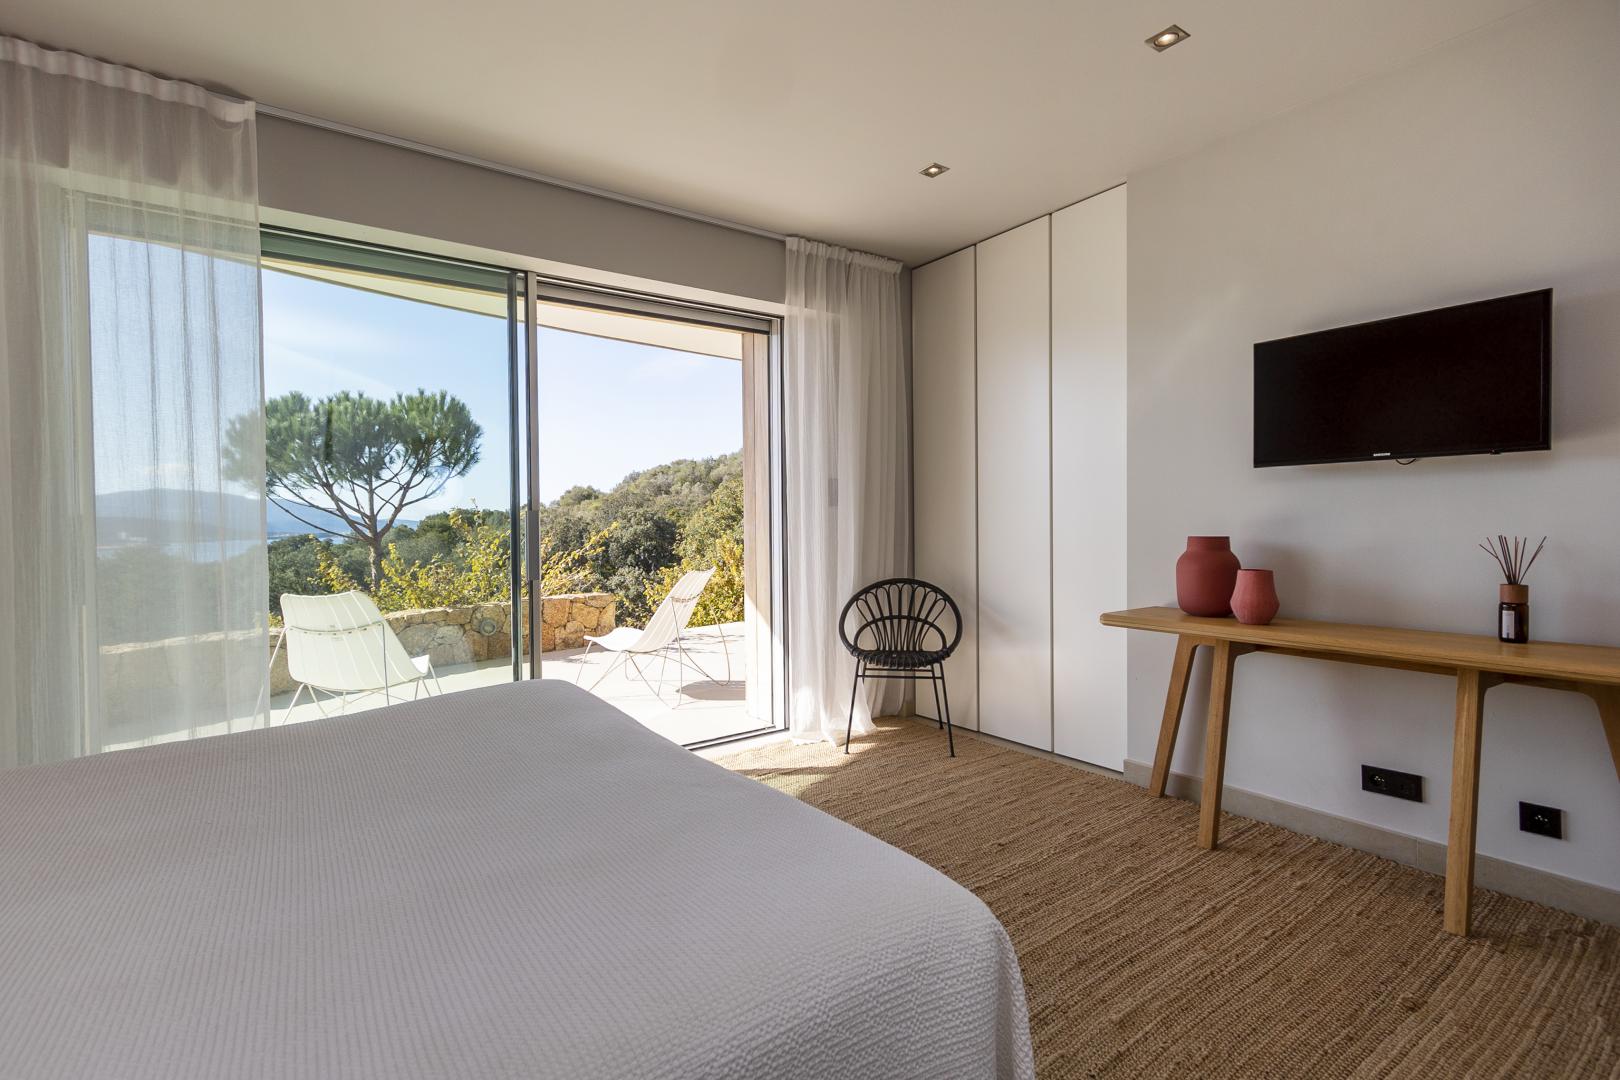 Un séjour en Corse dans une chambre d'hôtes | Domaine Cipiniello